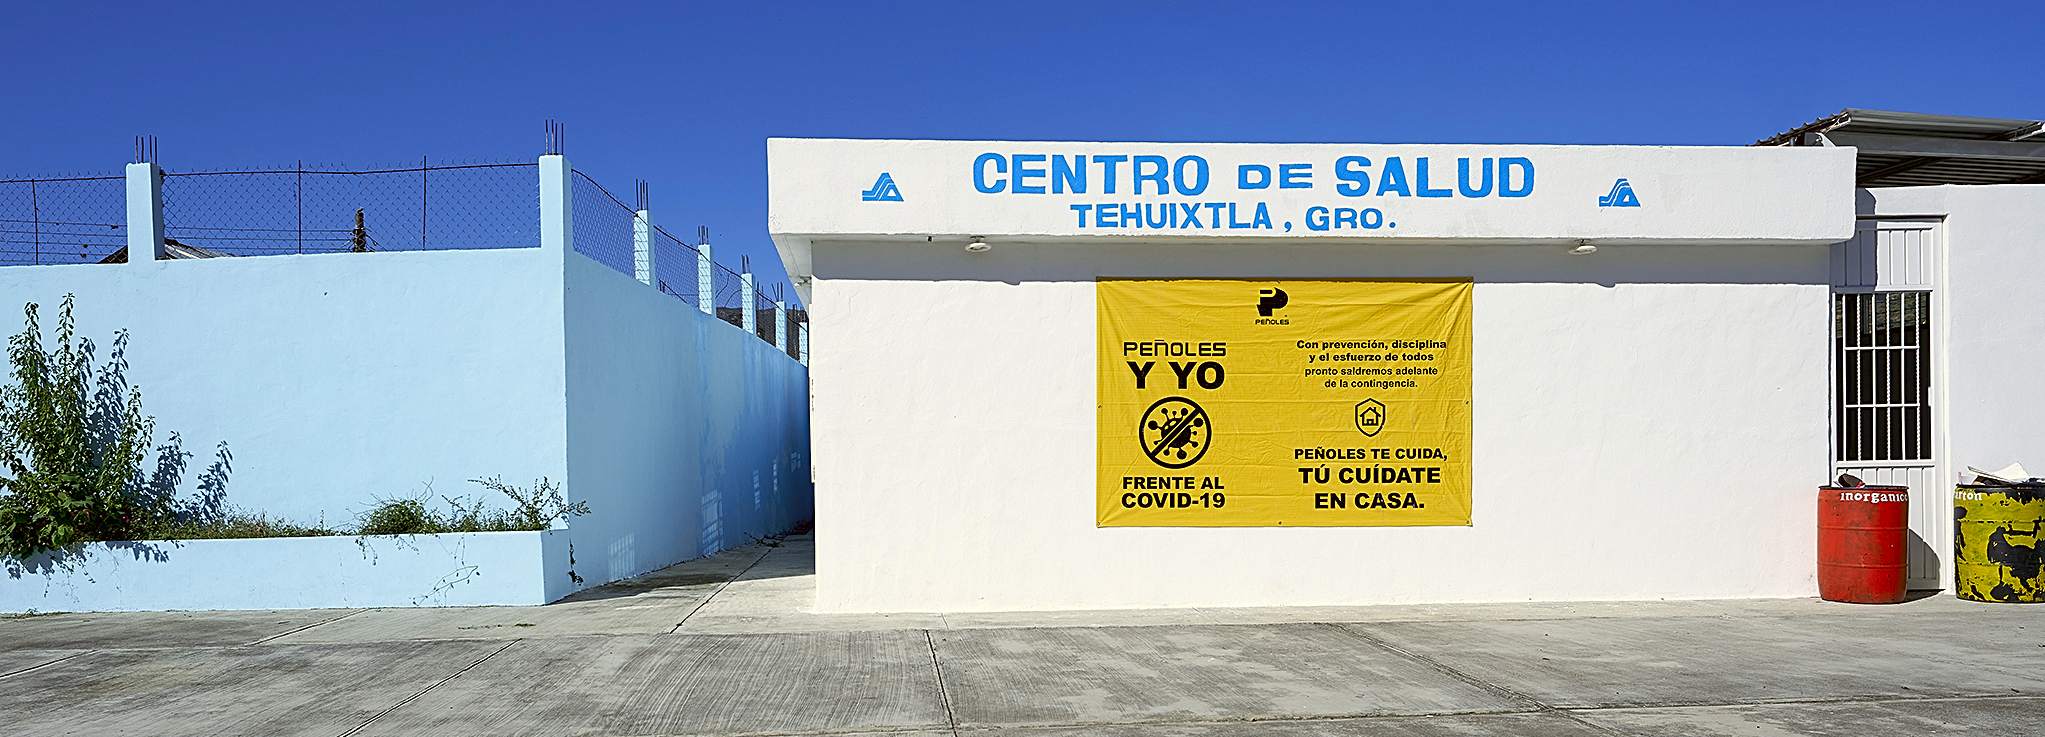 Centro de salud Tehuixtla, Guerrero, cerca de la unidad Capela